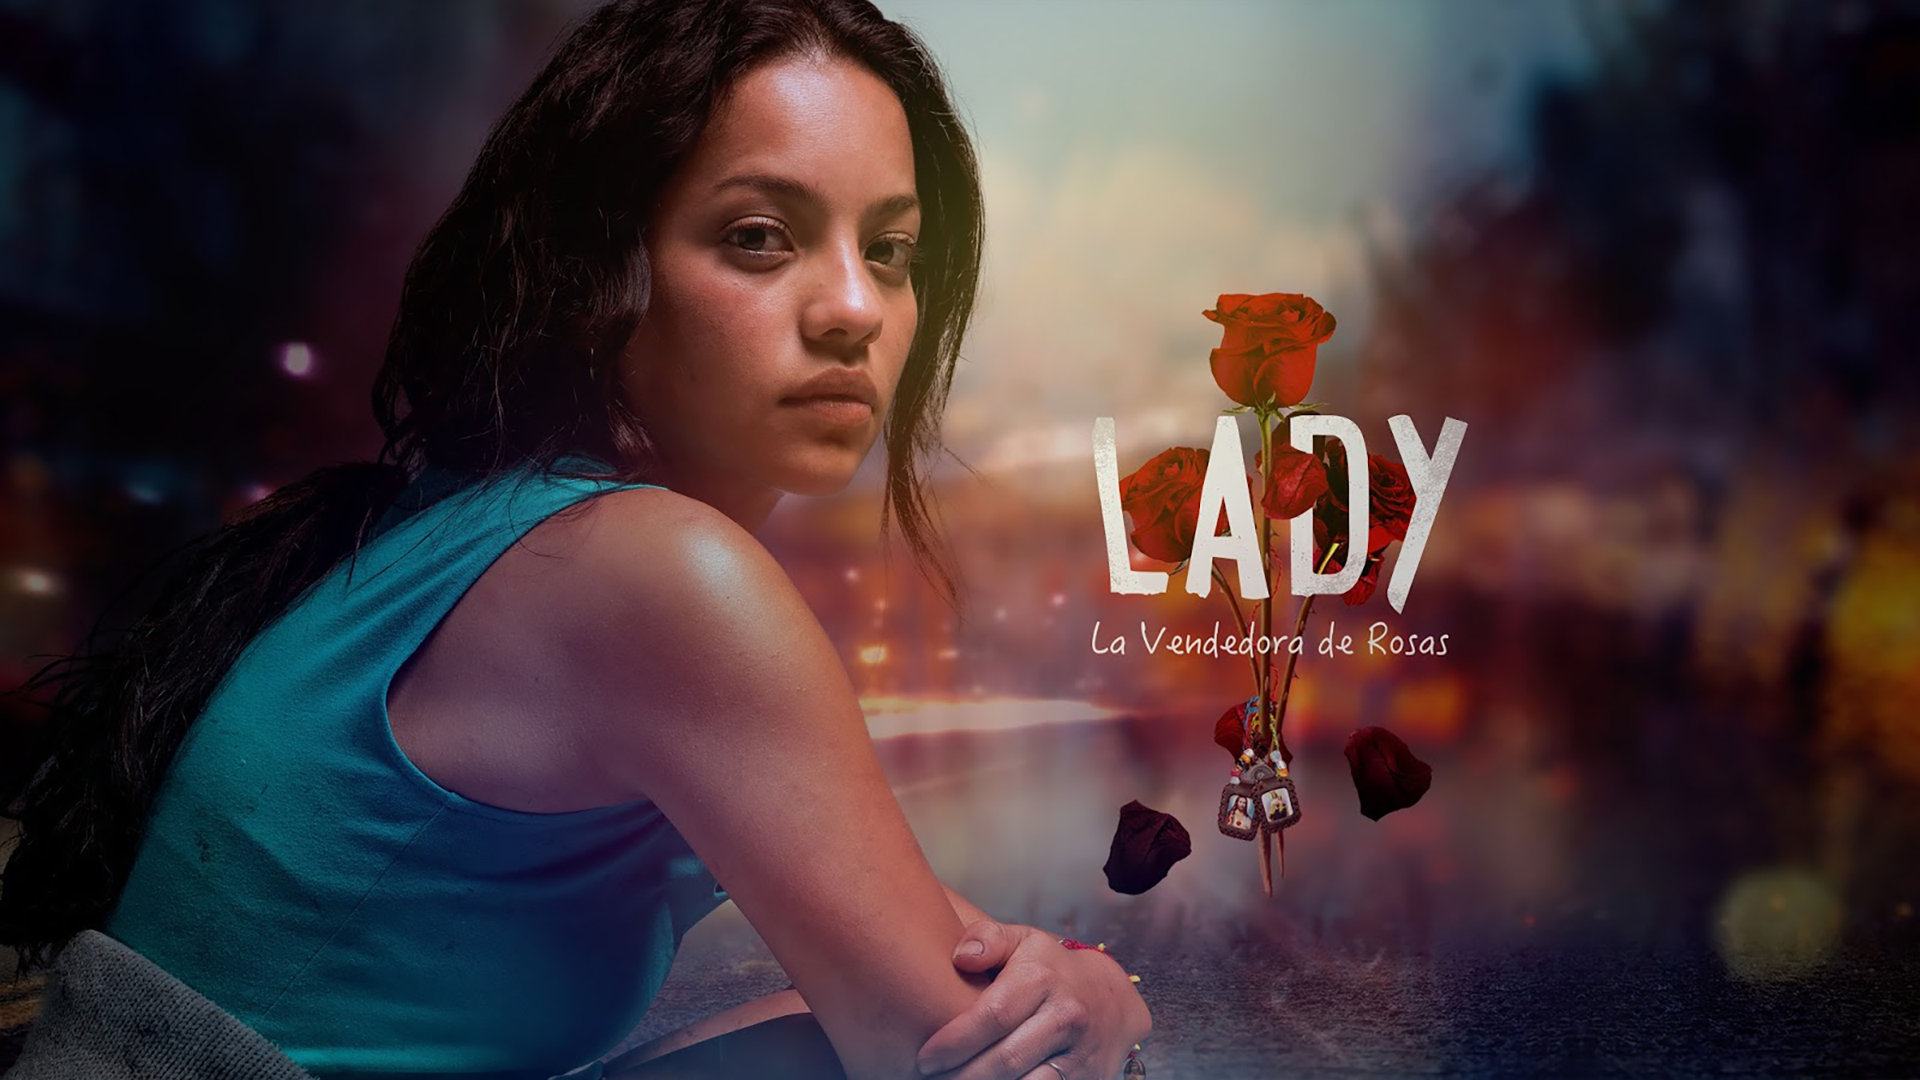 Леди, продавец роз / Lady, La Vendedora de Rosas (2015) Мексика